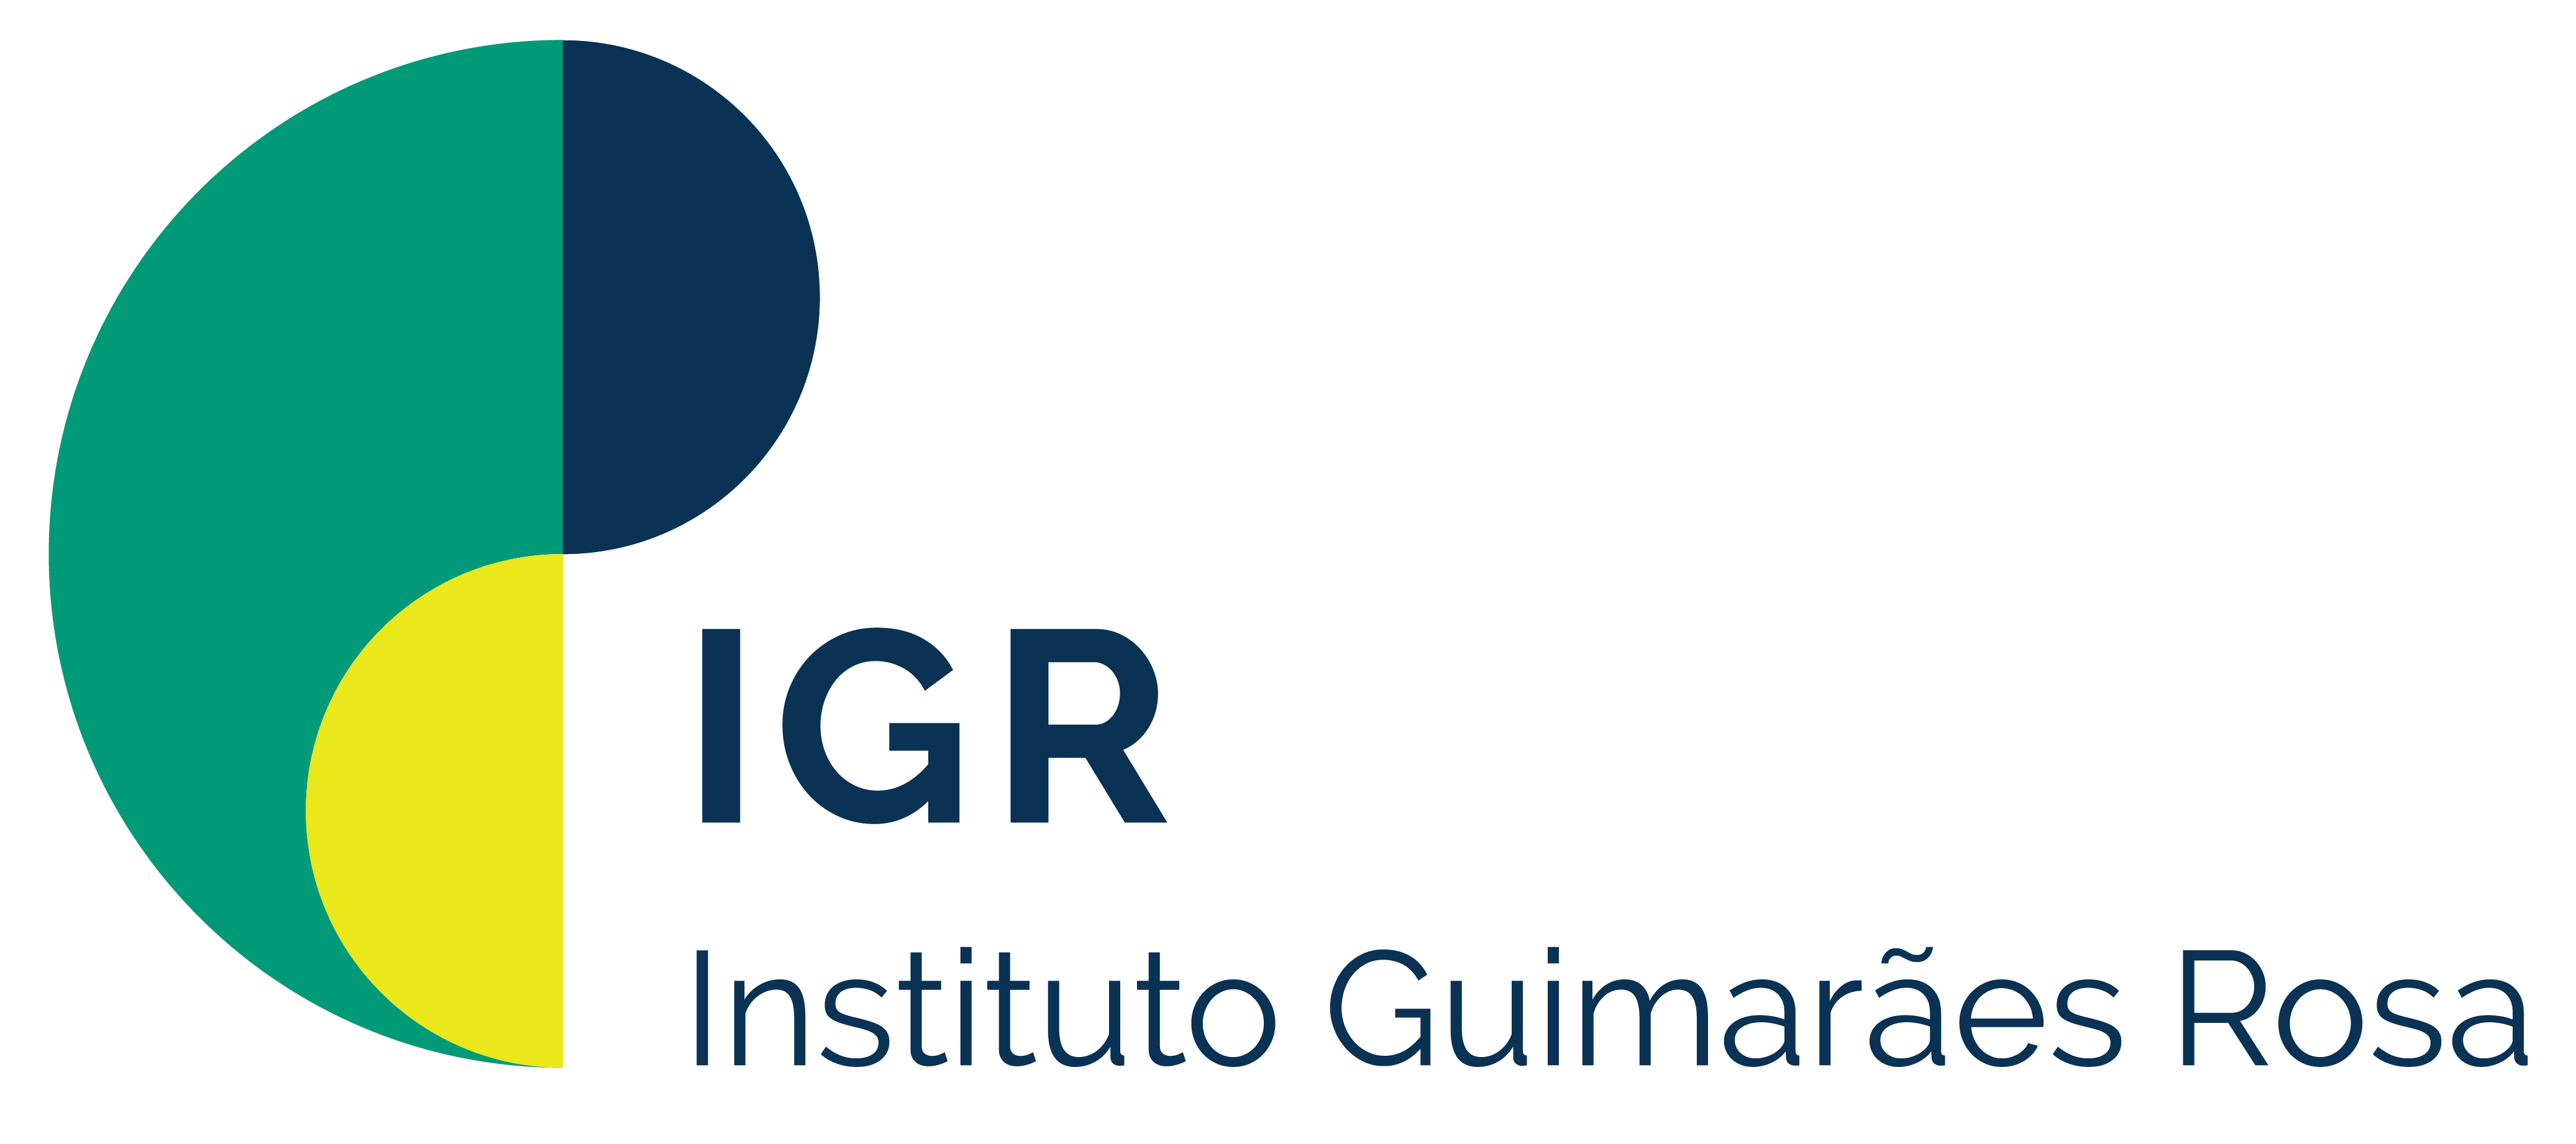 Instituto Guimaraes Rosa logo